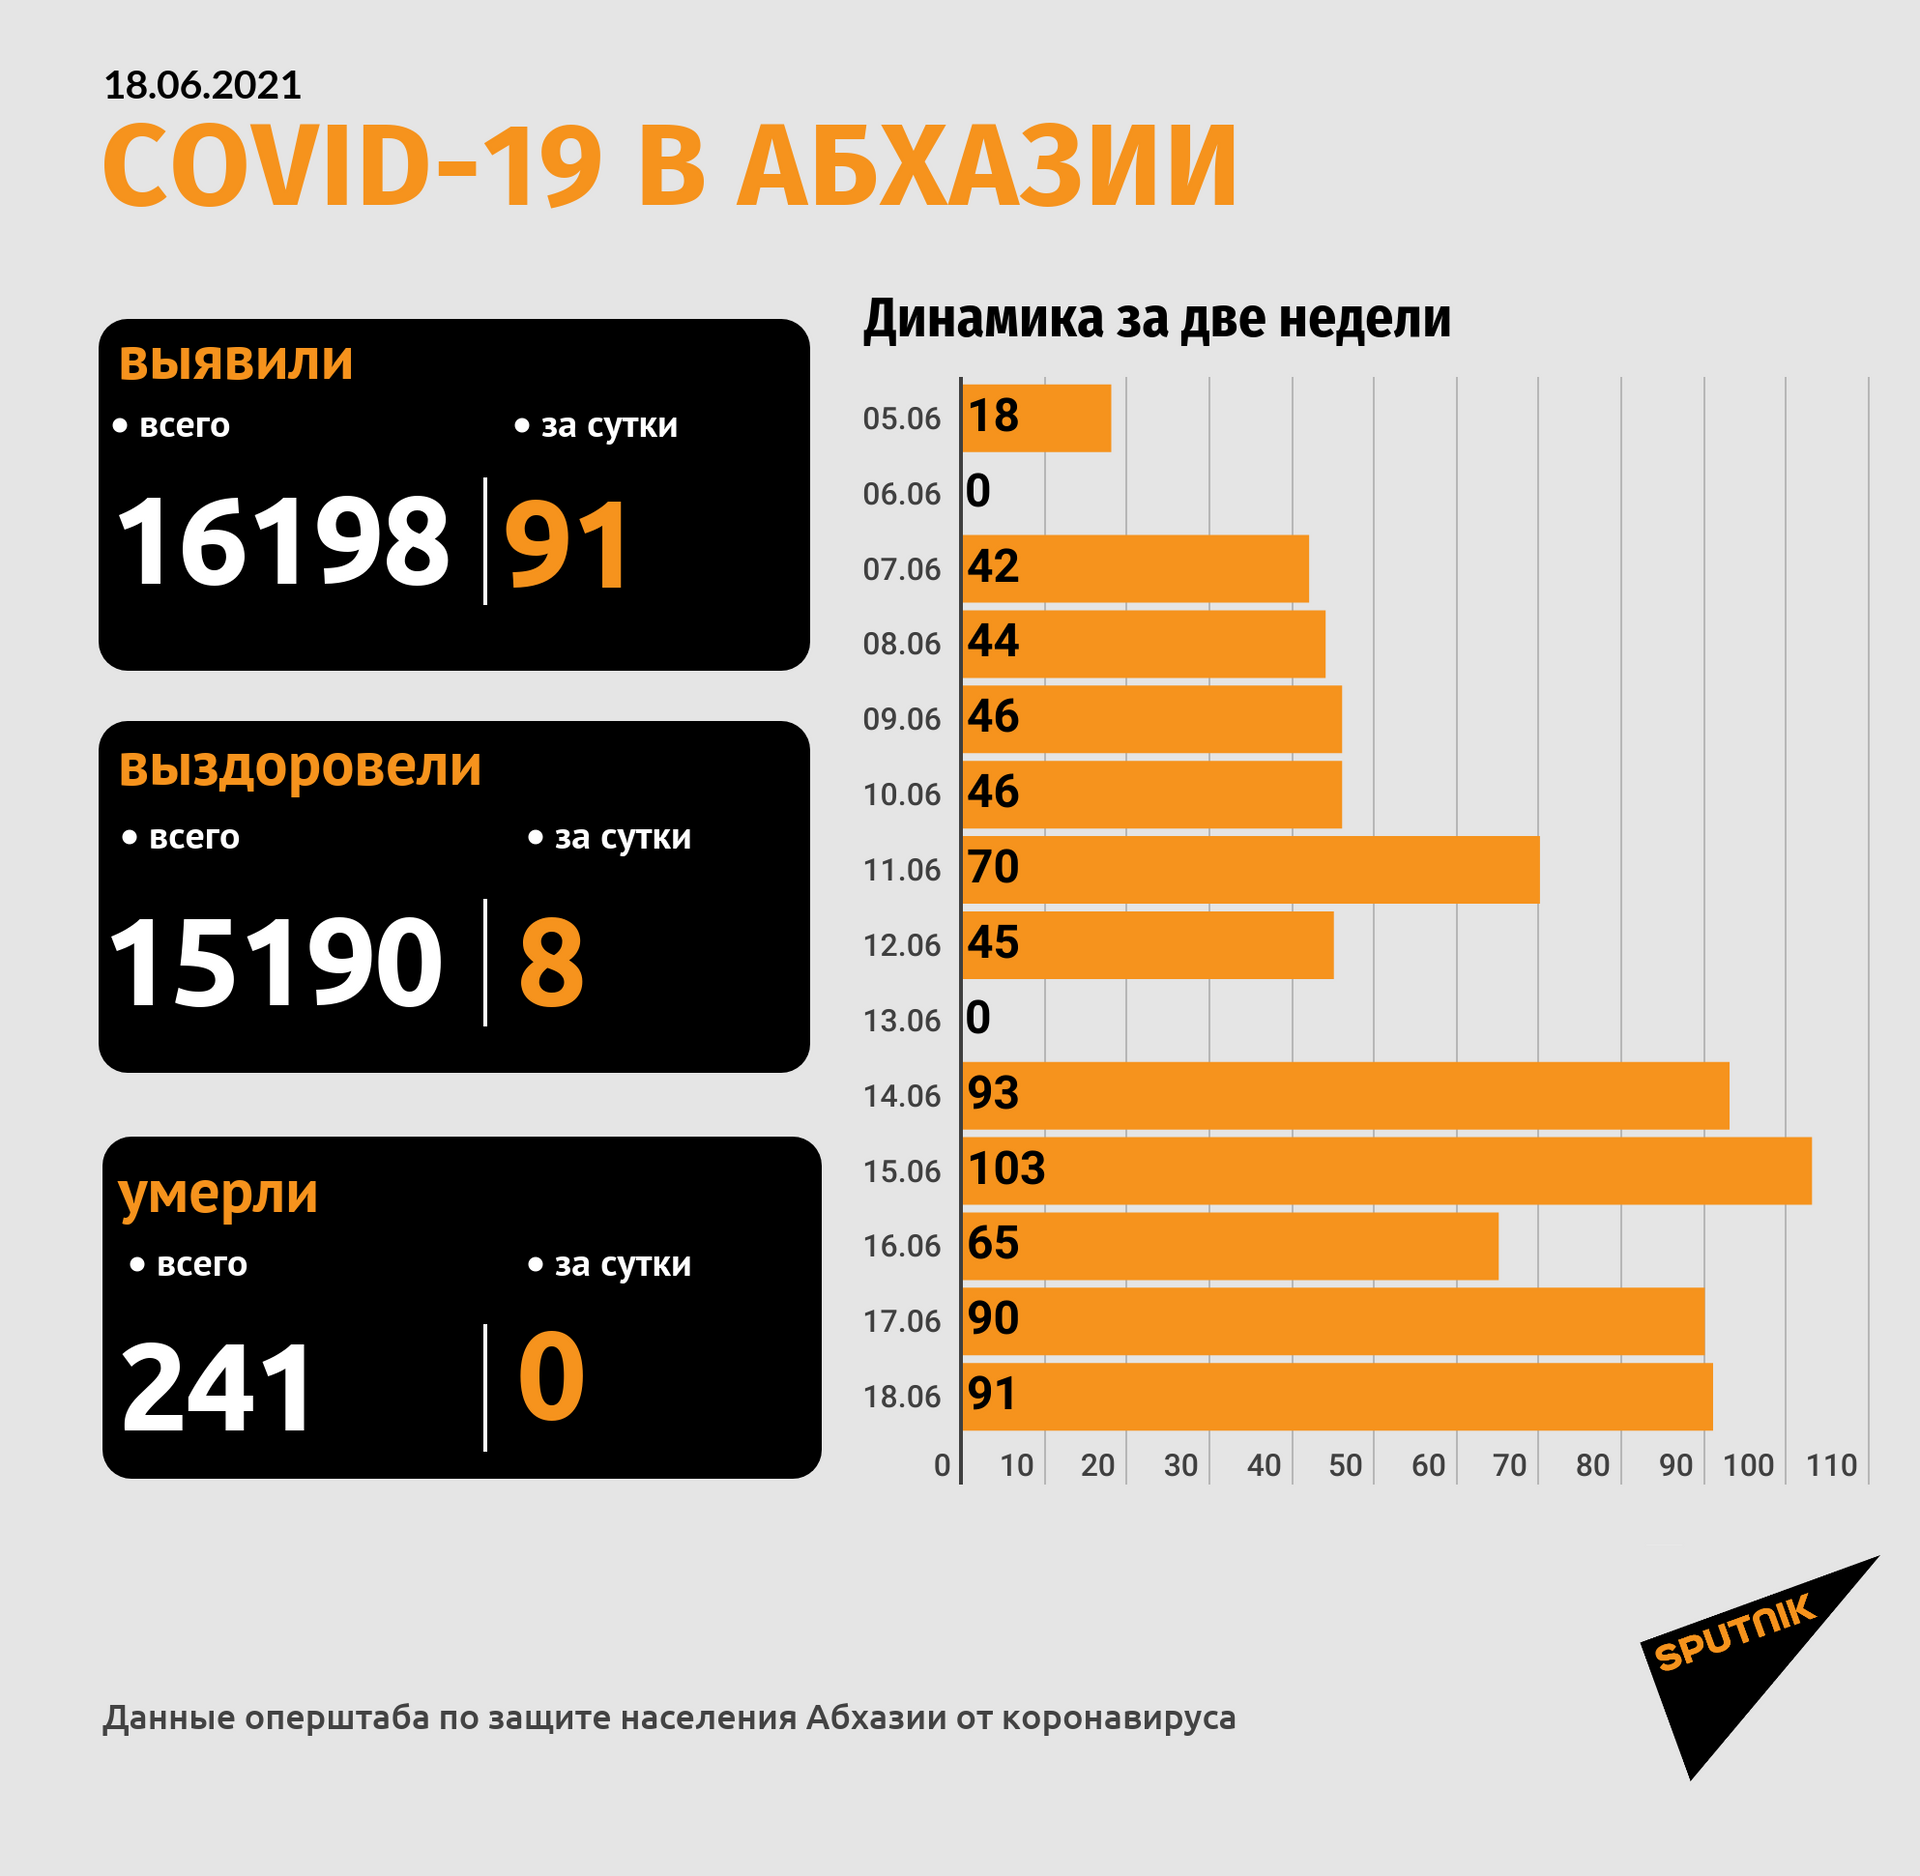 Диагноз COVID-19 подтвержден у 91 человека в Абхазии   - Sputnik Абхазия, 1920, 18.06.2021